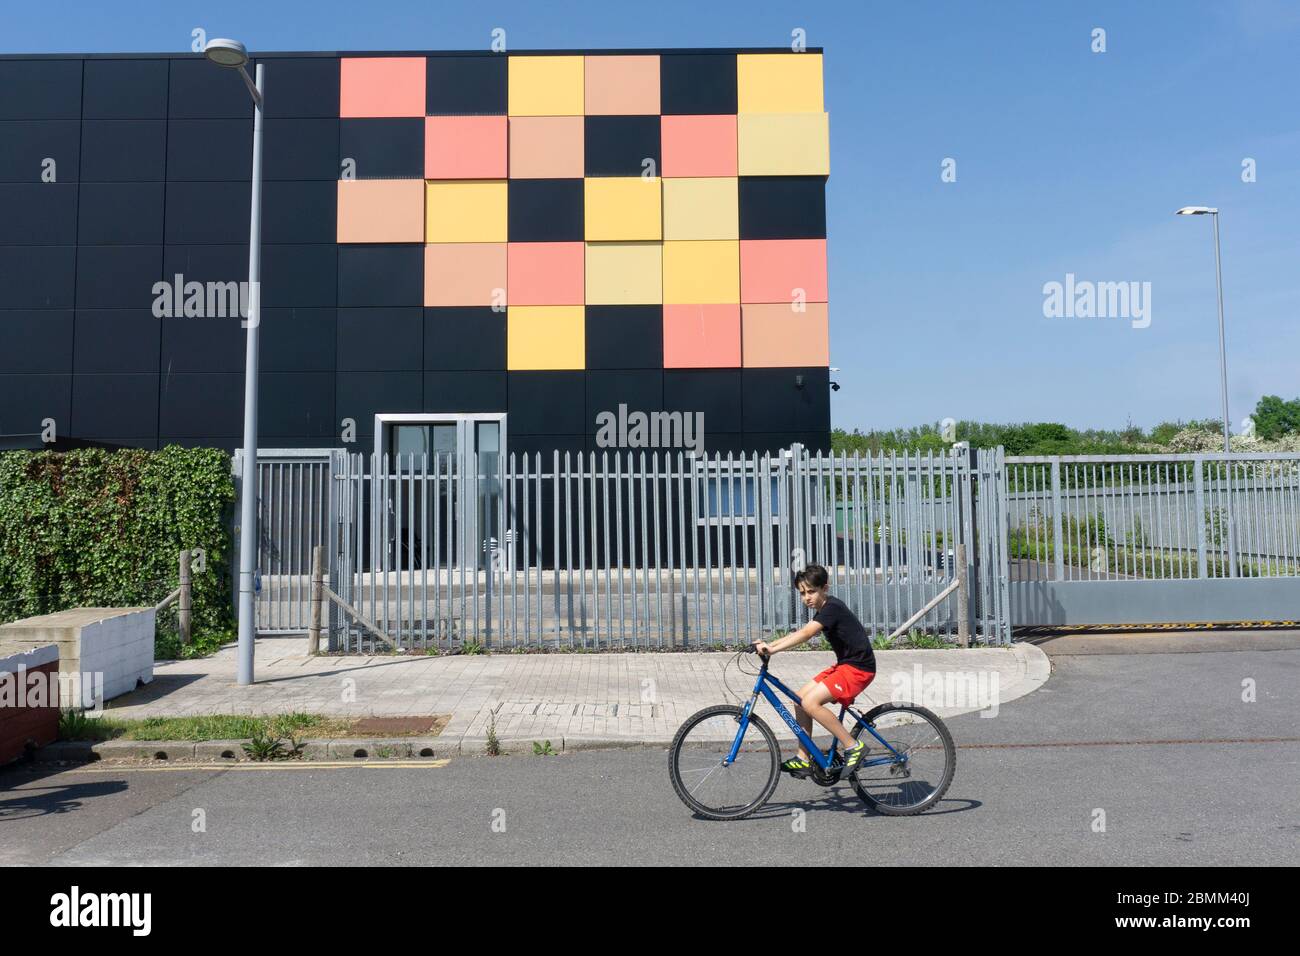 Edificio cúbico negro mate con azulejos amarillos y rojos en una esquina como diseño gráfico detrás de barandillas de seguridad de metal centro de datos de cielo azul intenso Foto de stock